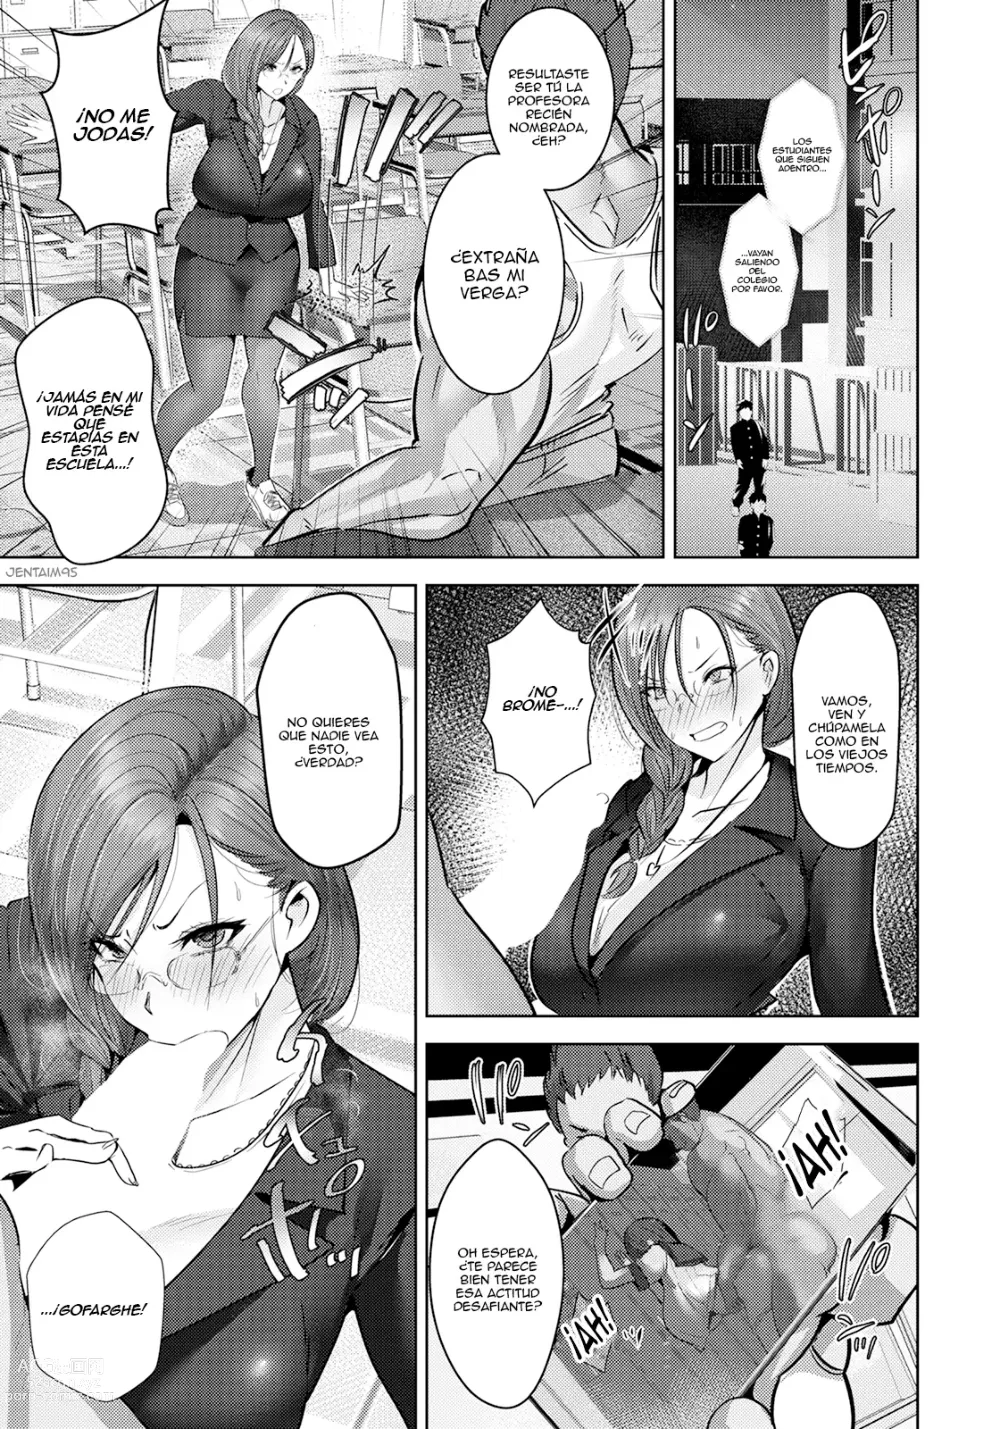 Page 3 of manga Inkou Revival